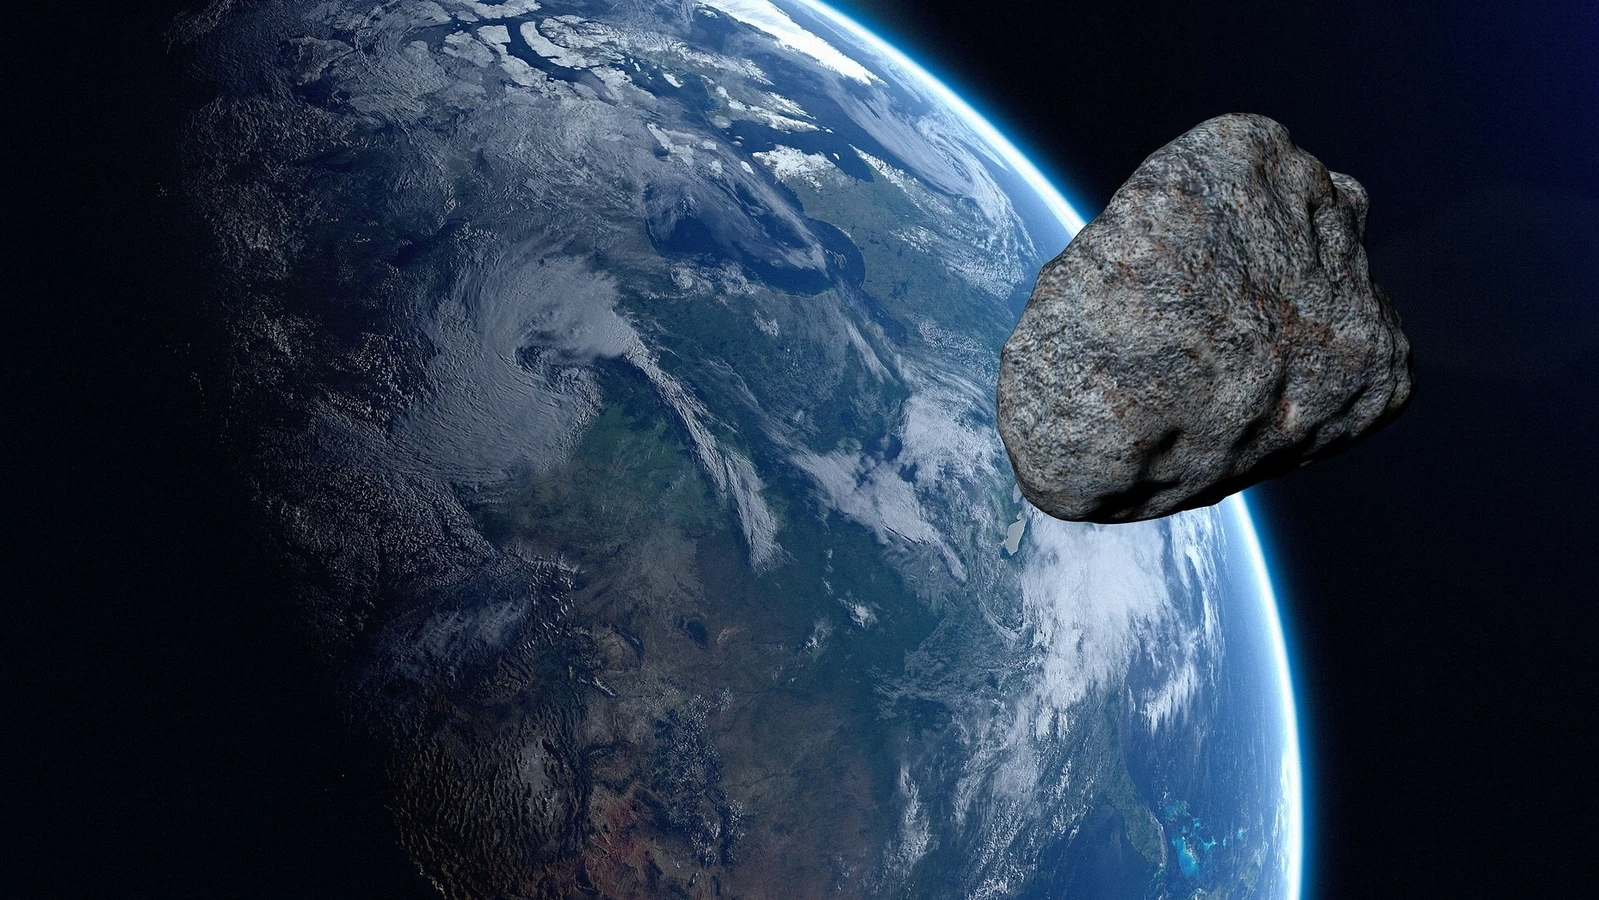 تکان دهنده!  این سیارک وحشی از ناکجاآباد ظاهر شد و به سمت زمین حرکت کرد.  دانشمندان با یک نقطه کور برخورد کردند